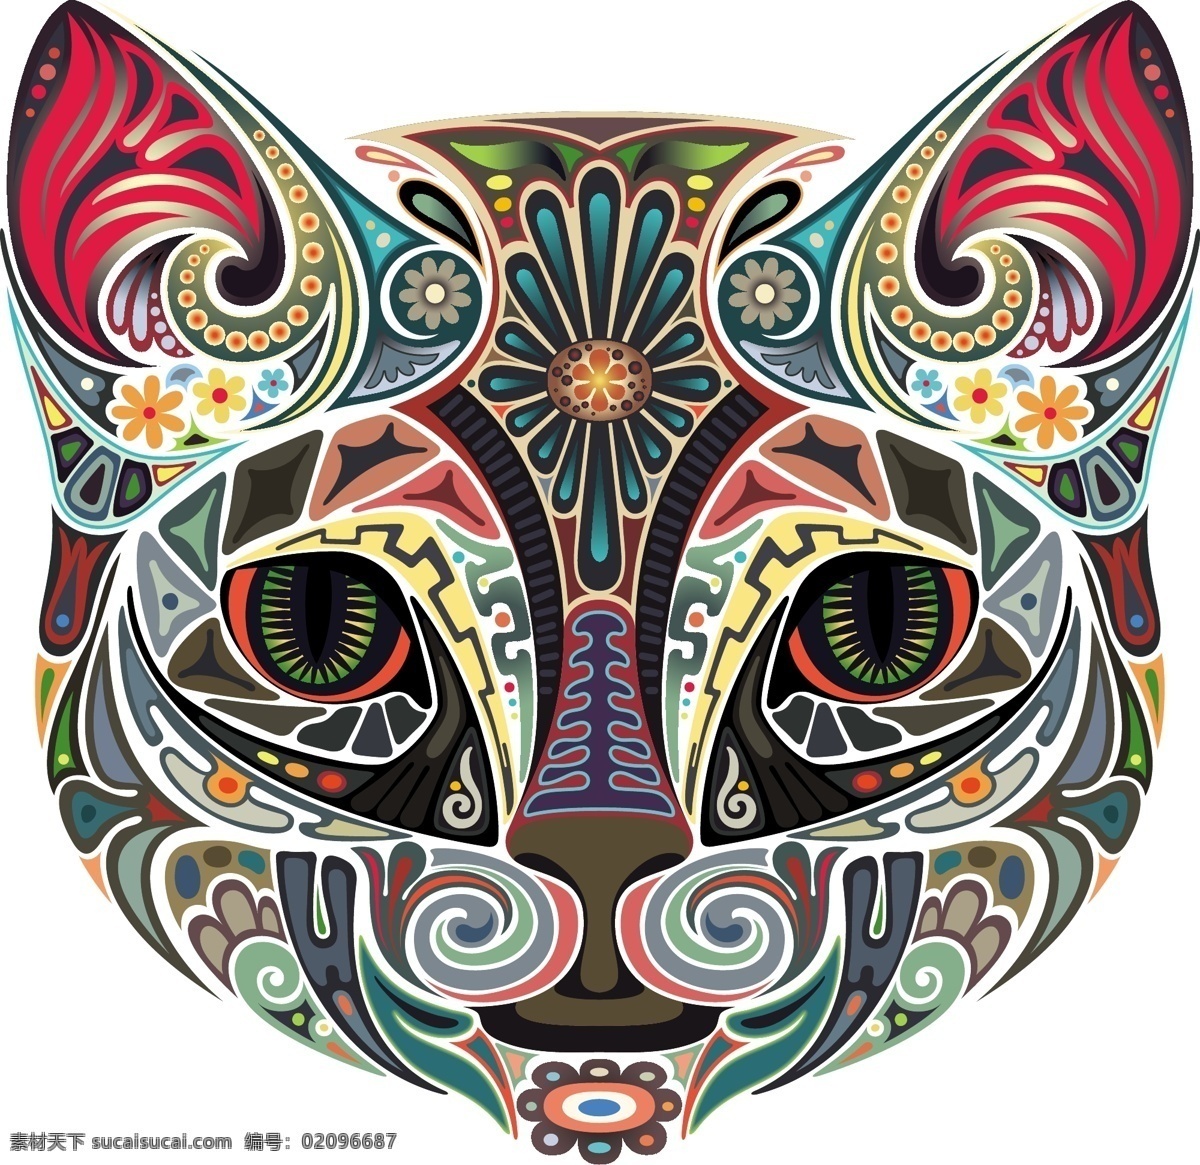 动物 纹身 刺青 矢量素材 矢量图 创意设计 彩色 炫彩 矢量 高清图片